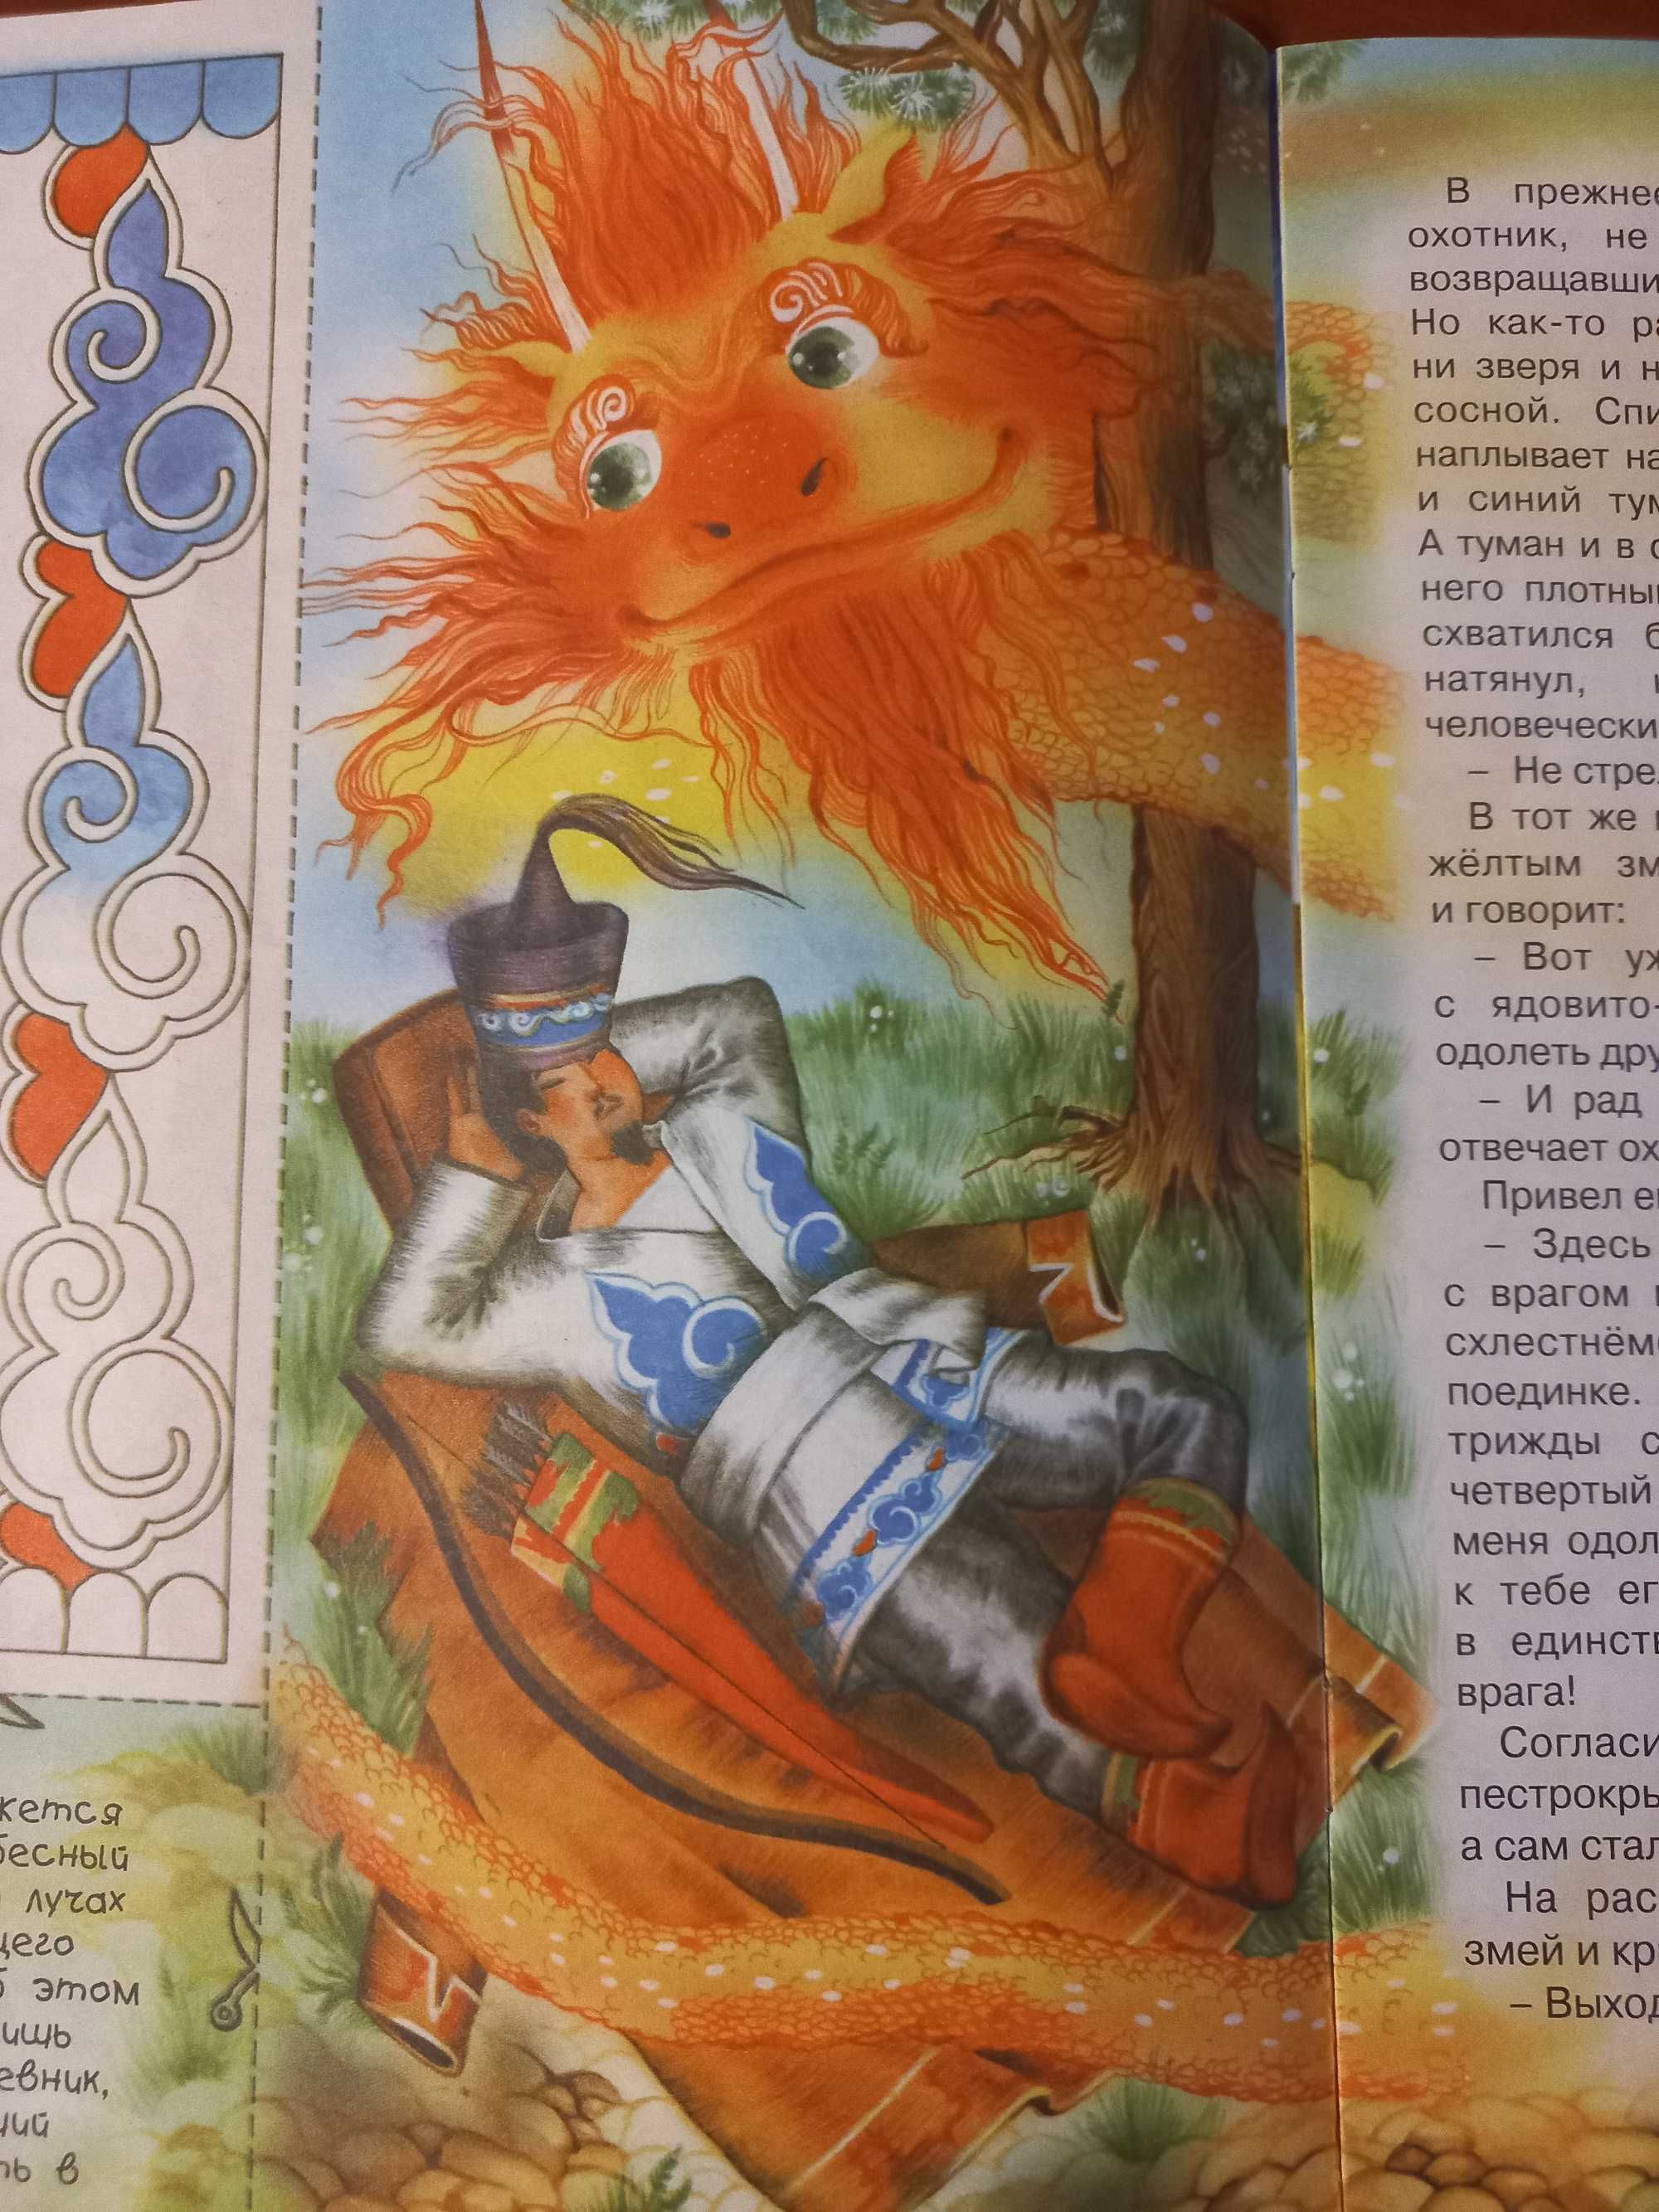 Журнал сказка ребенок развлечение рисунок развитие гармония игра бурят